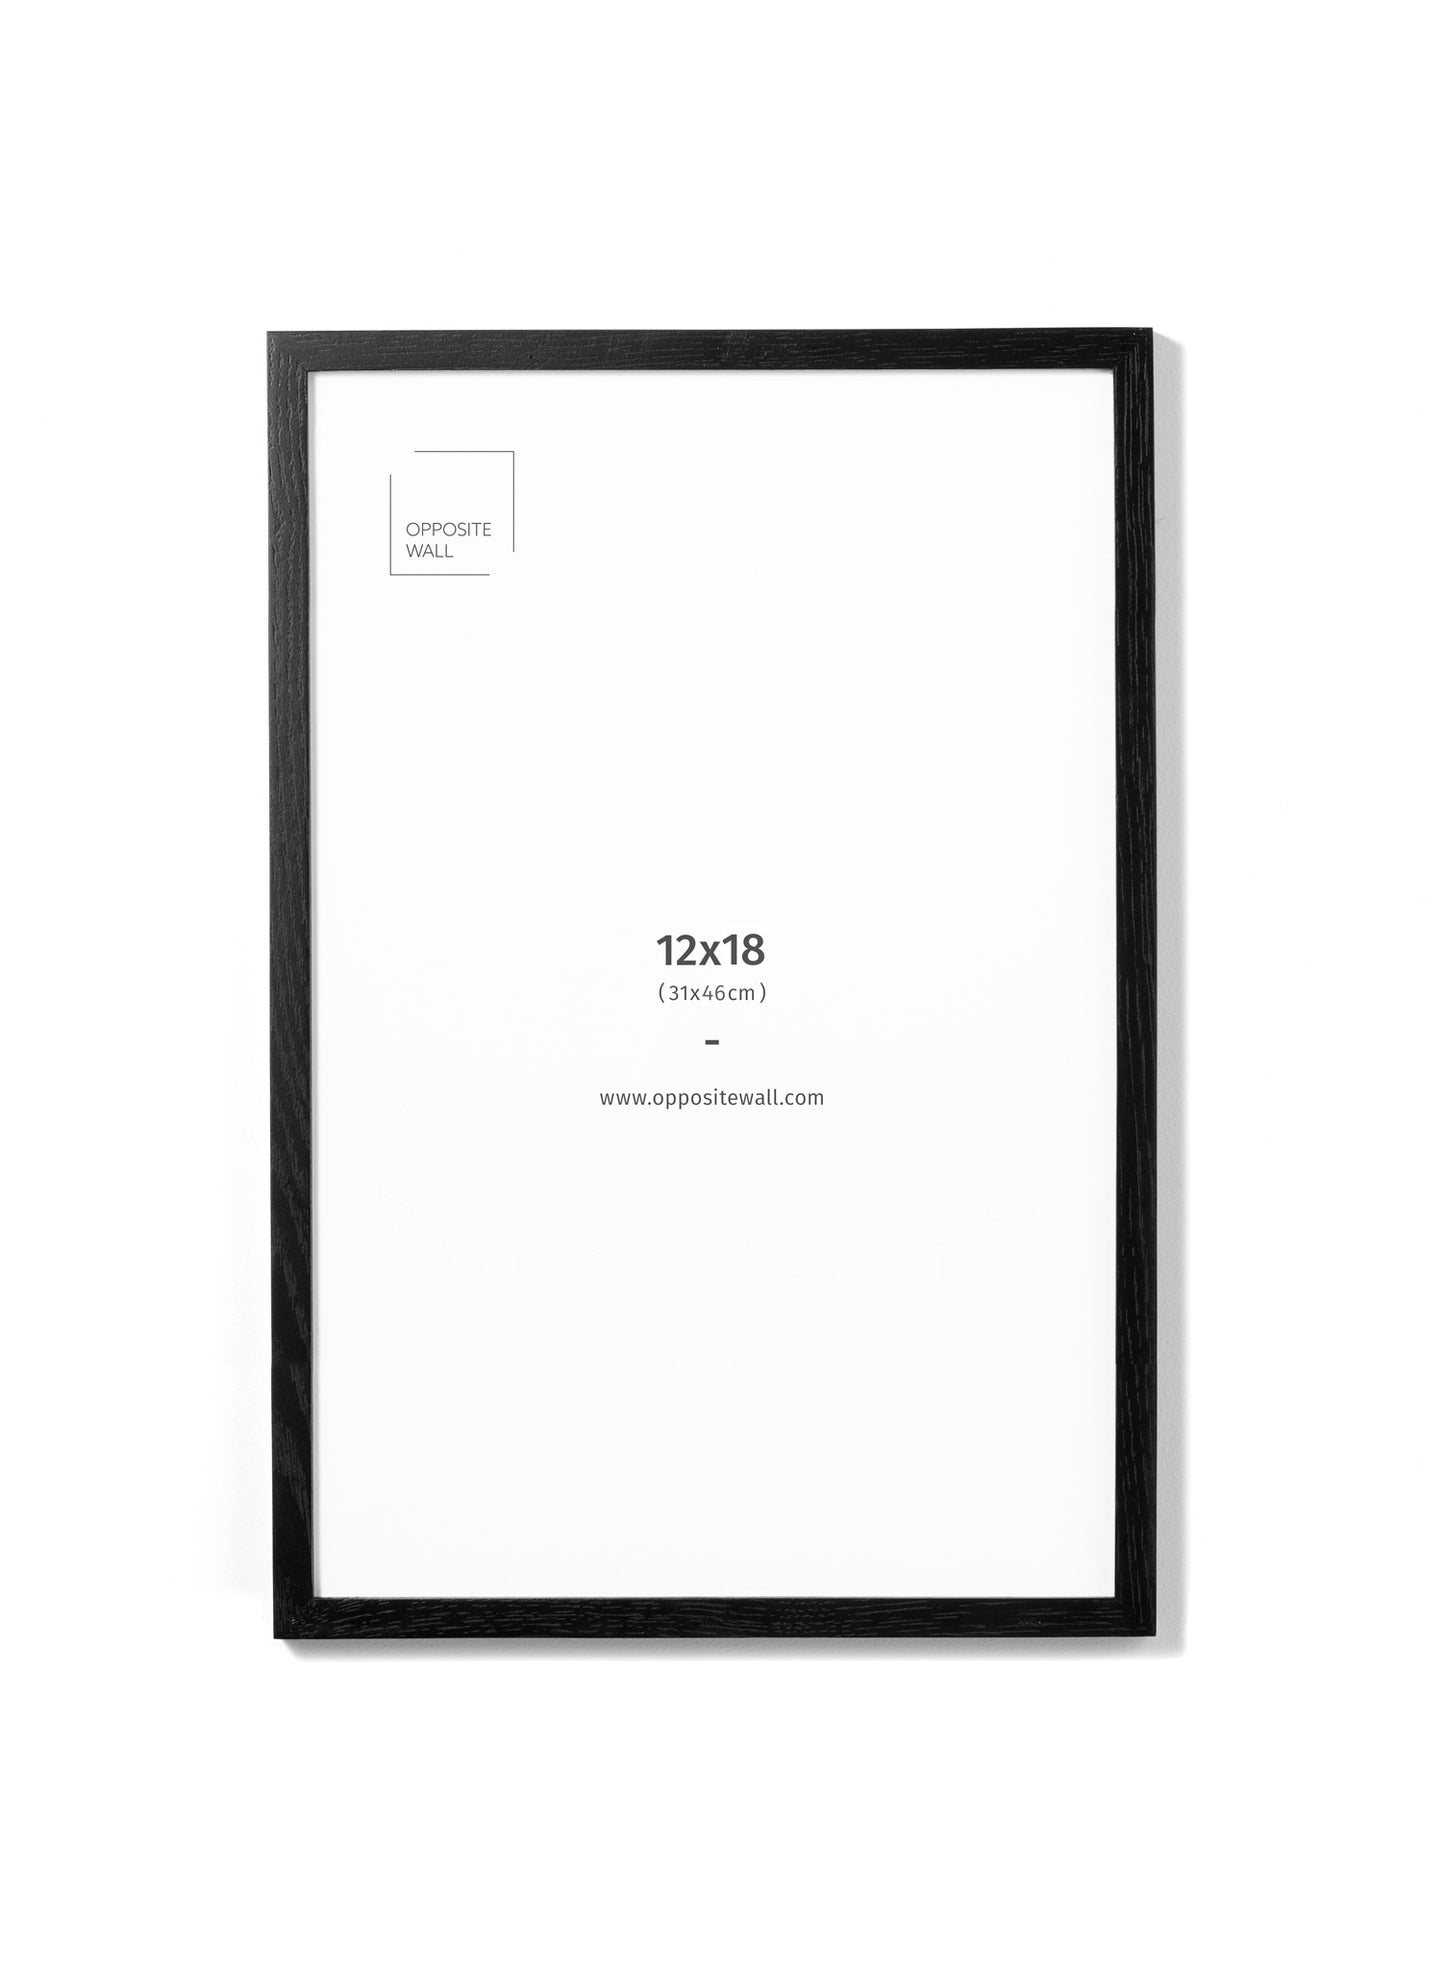 Black Oak Frame, 12x18 in | 31x46 cm